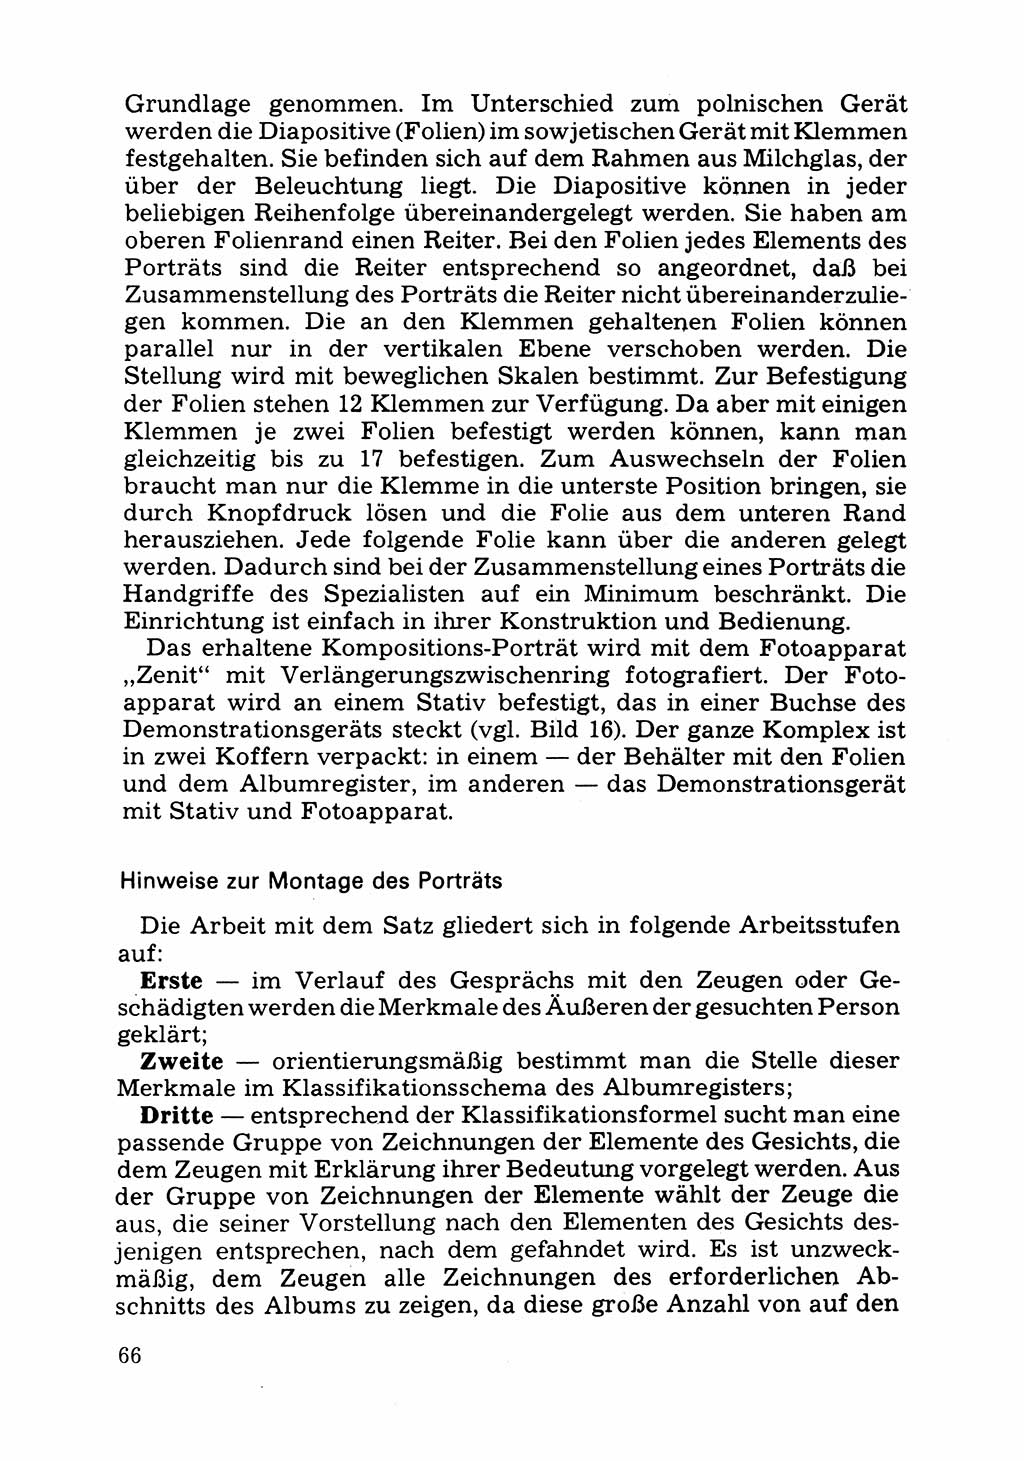 Das subjektive Porträt [Deutsche Demokratische Republik (DDR)] 1981, Seite 66 (Subj. Port. DDR 1981, S. 66)